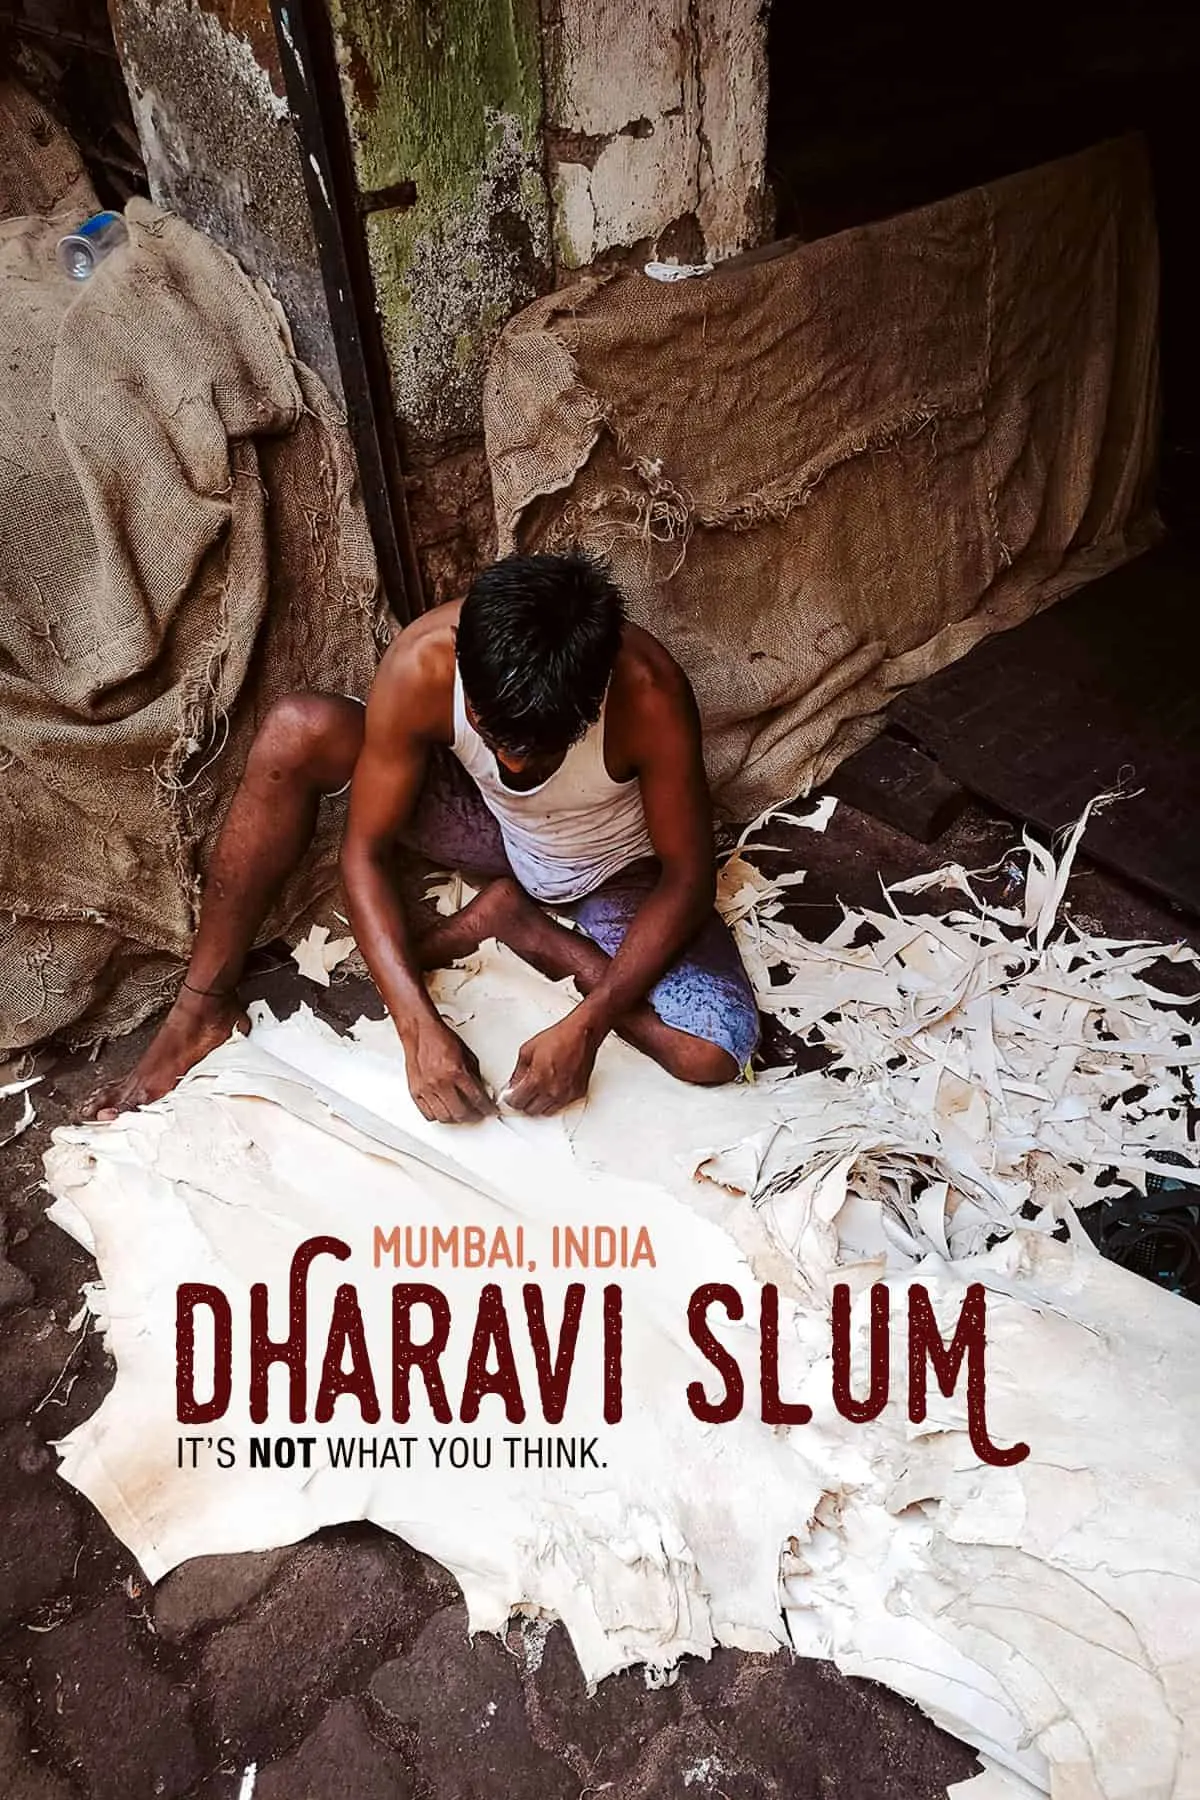 Dharavi slum, Mumbai, India